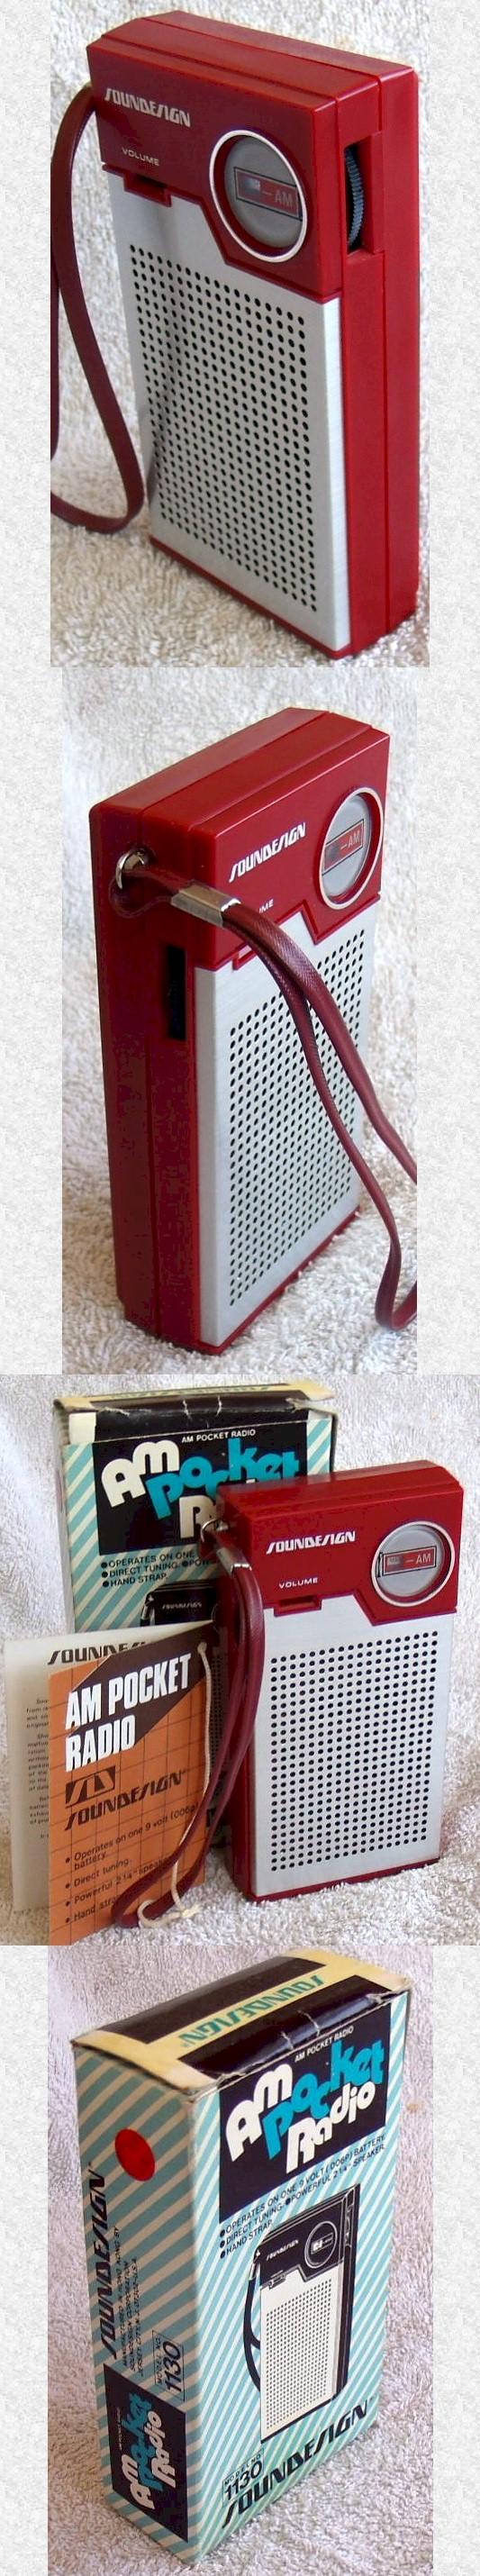 Soundesign 1130 Pocket Transistor (1968)